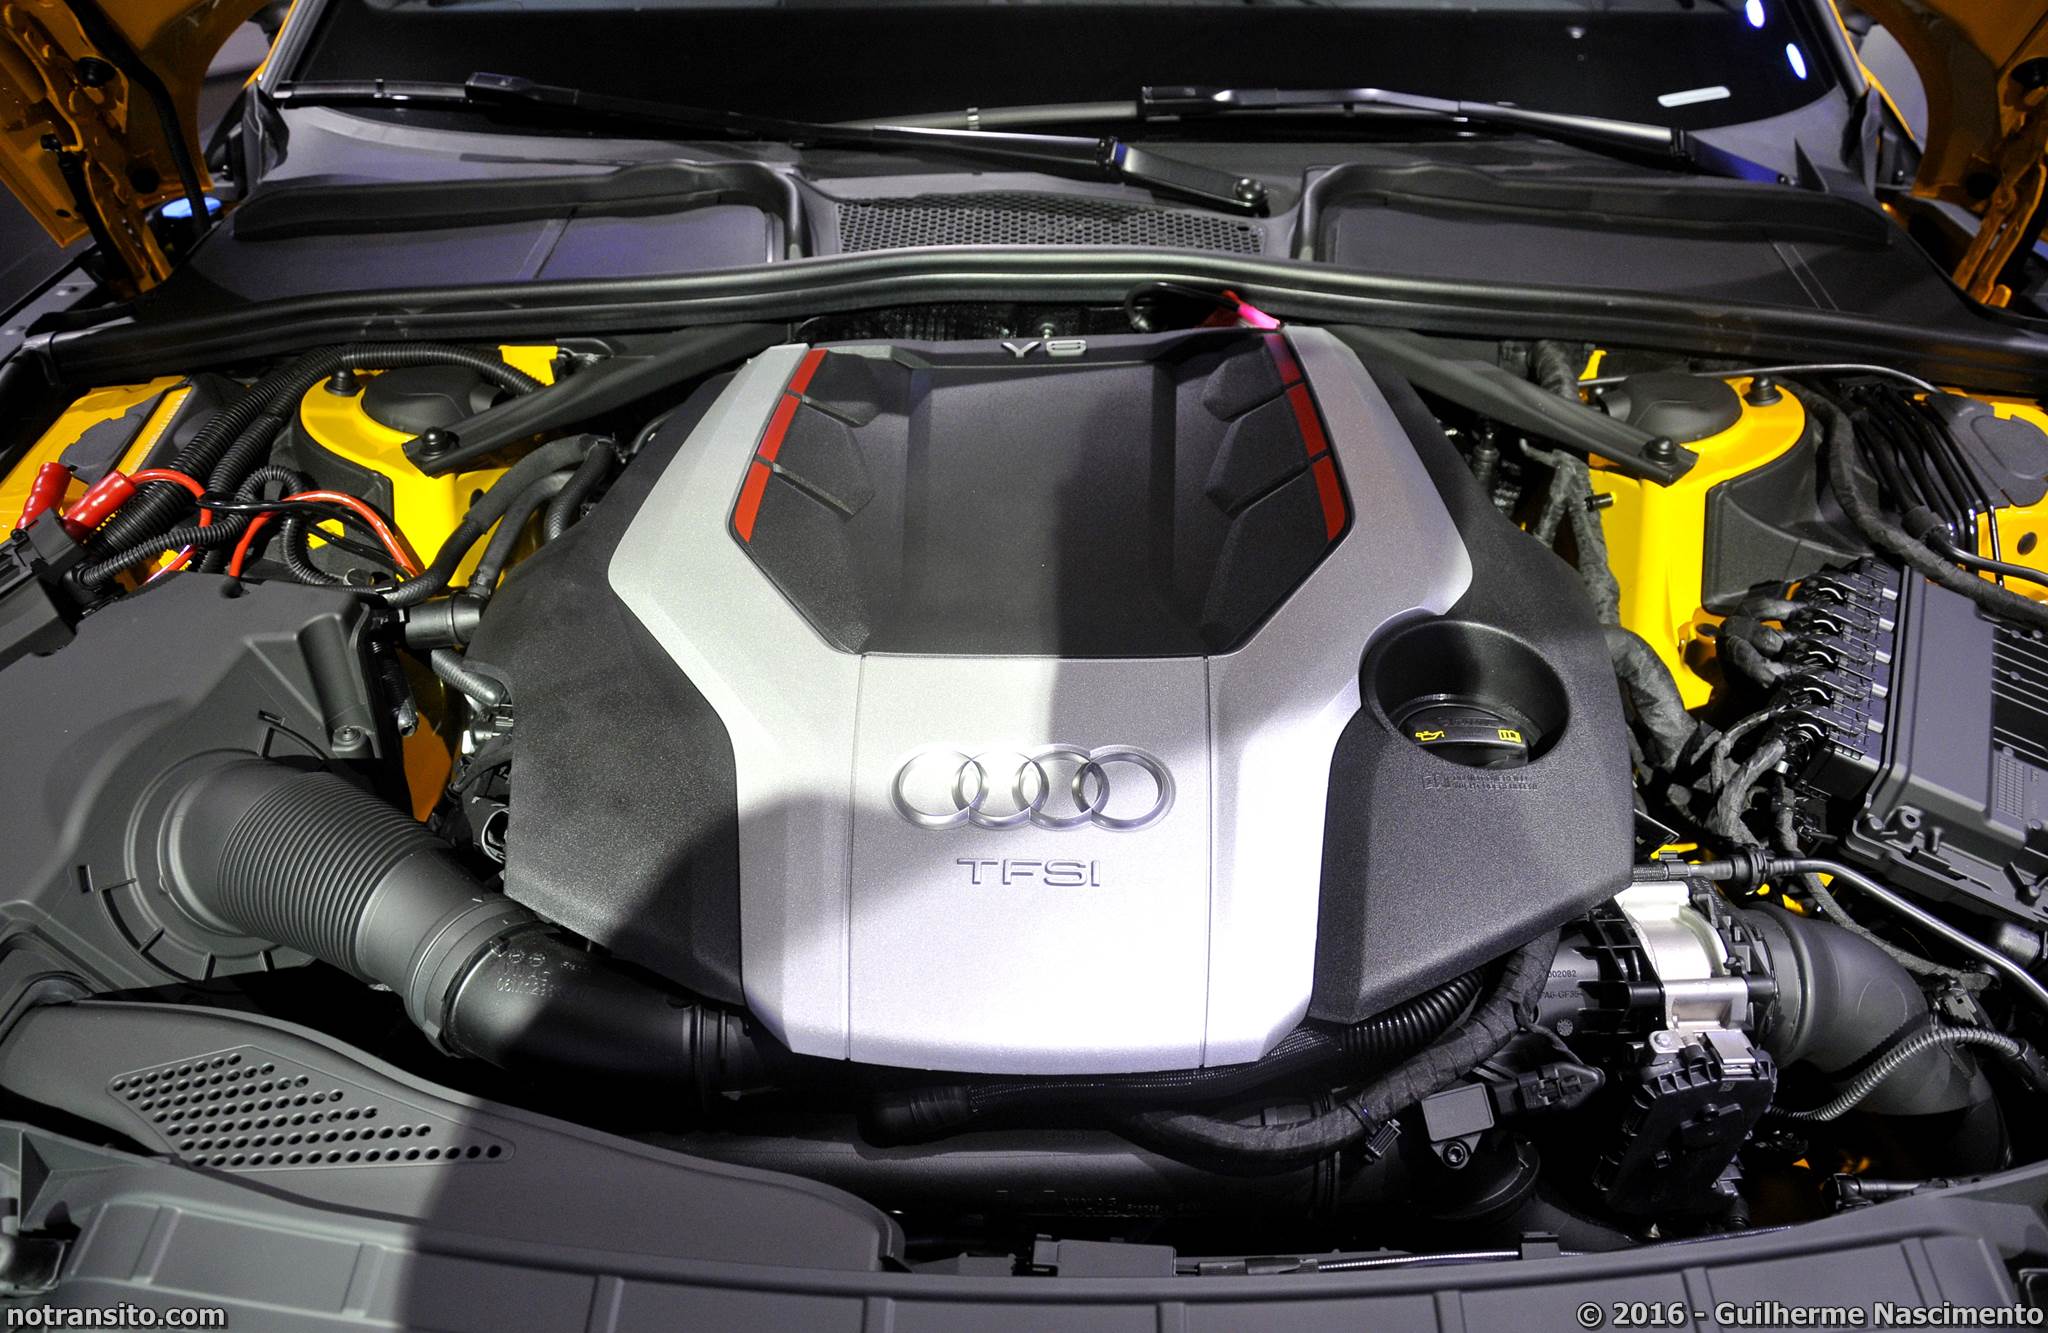 Audi S5 Coupé Salão do Automóvel 2016